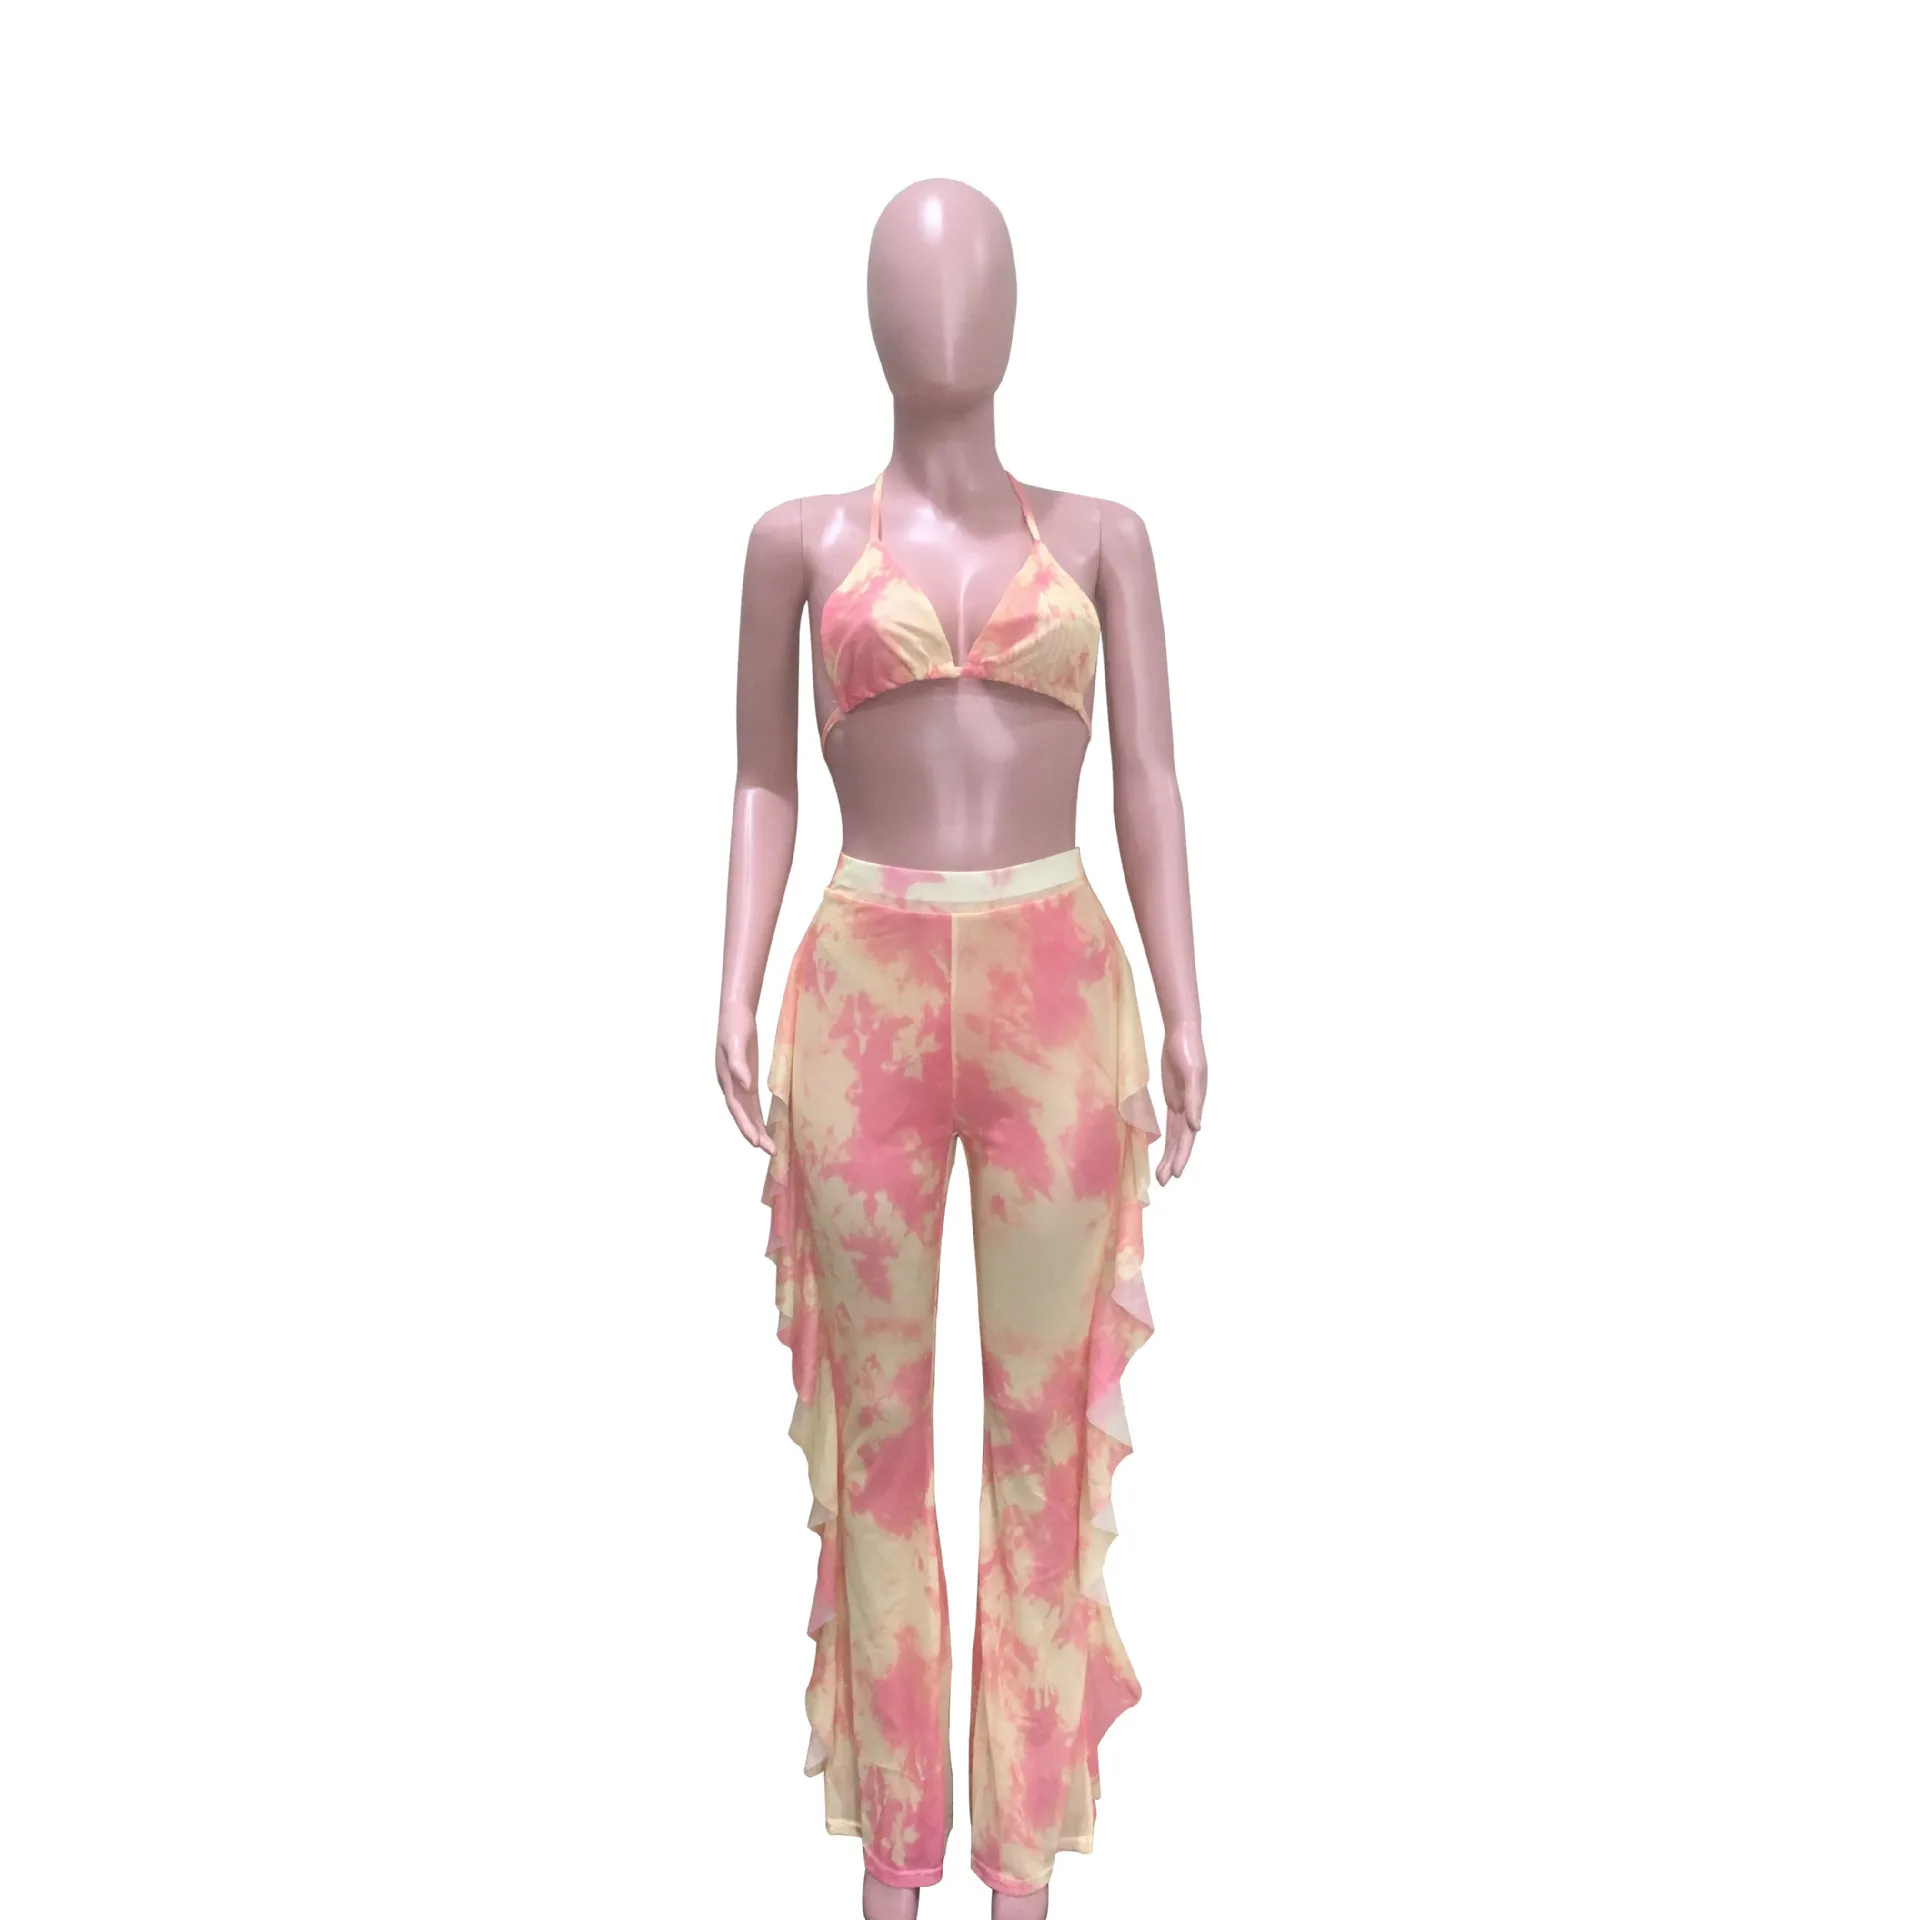 Femmes Tie Dye maillots de bain Deux Pièces Tenues ROSE Galaxy Imprimer Mesh Bikini Ensemble Bien que Halter Soutien-Gorge Top Ruffles Splicing Pantalon Costume